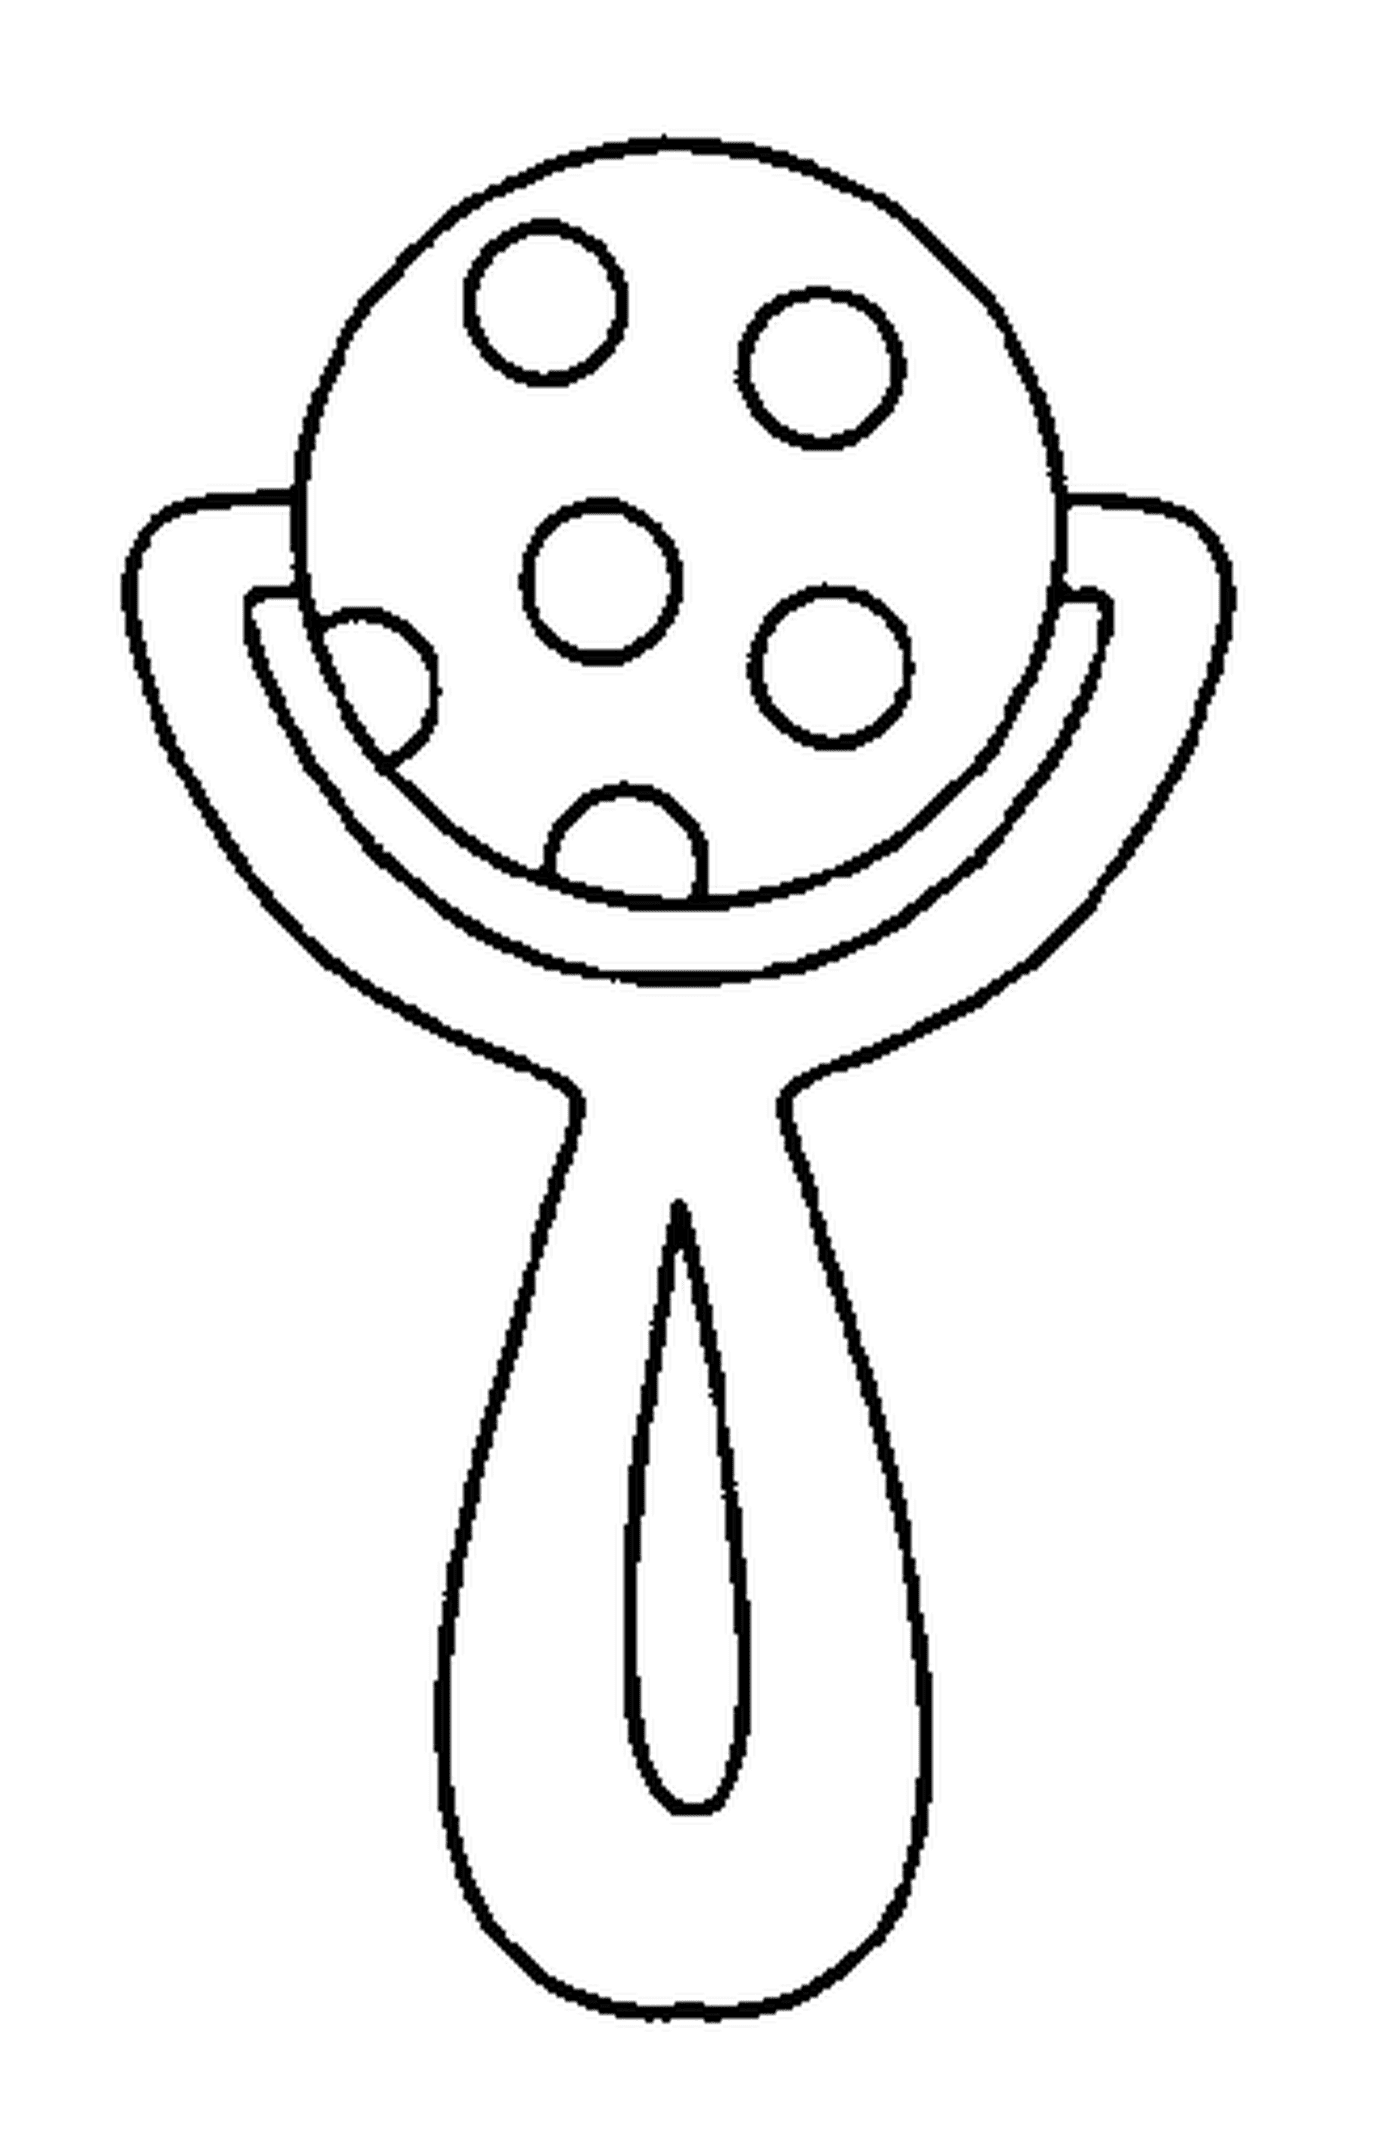  Una persona sosteniendo un sonajero 